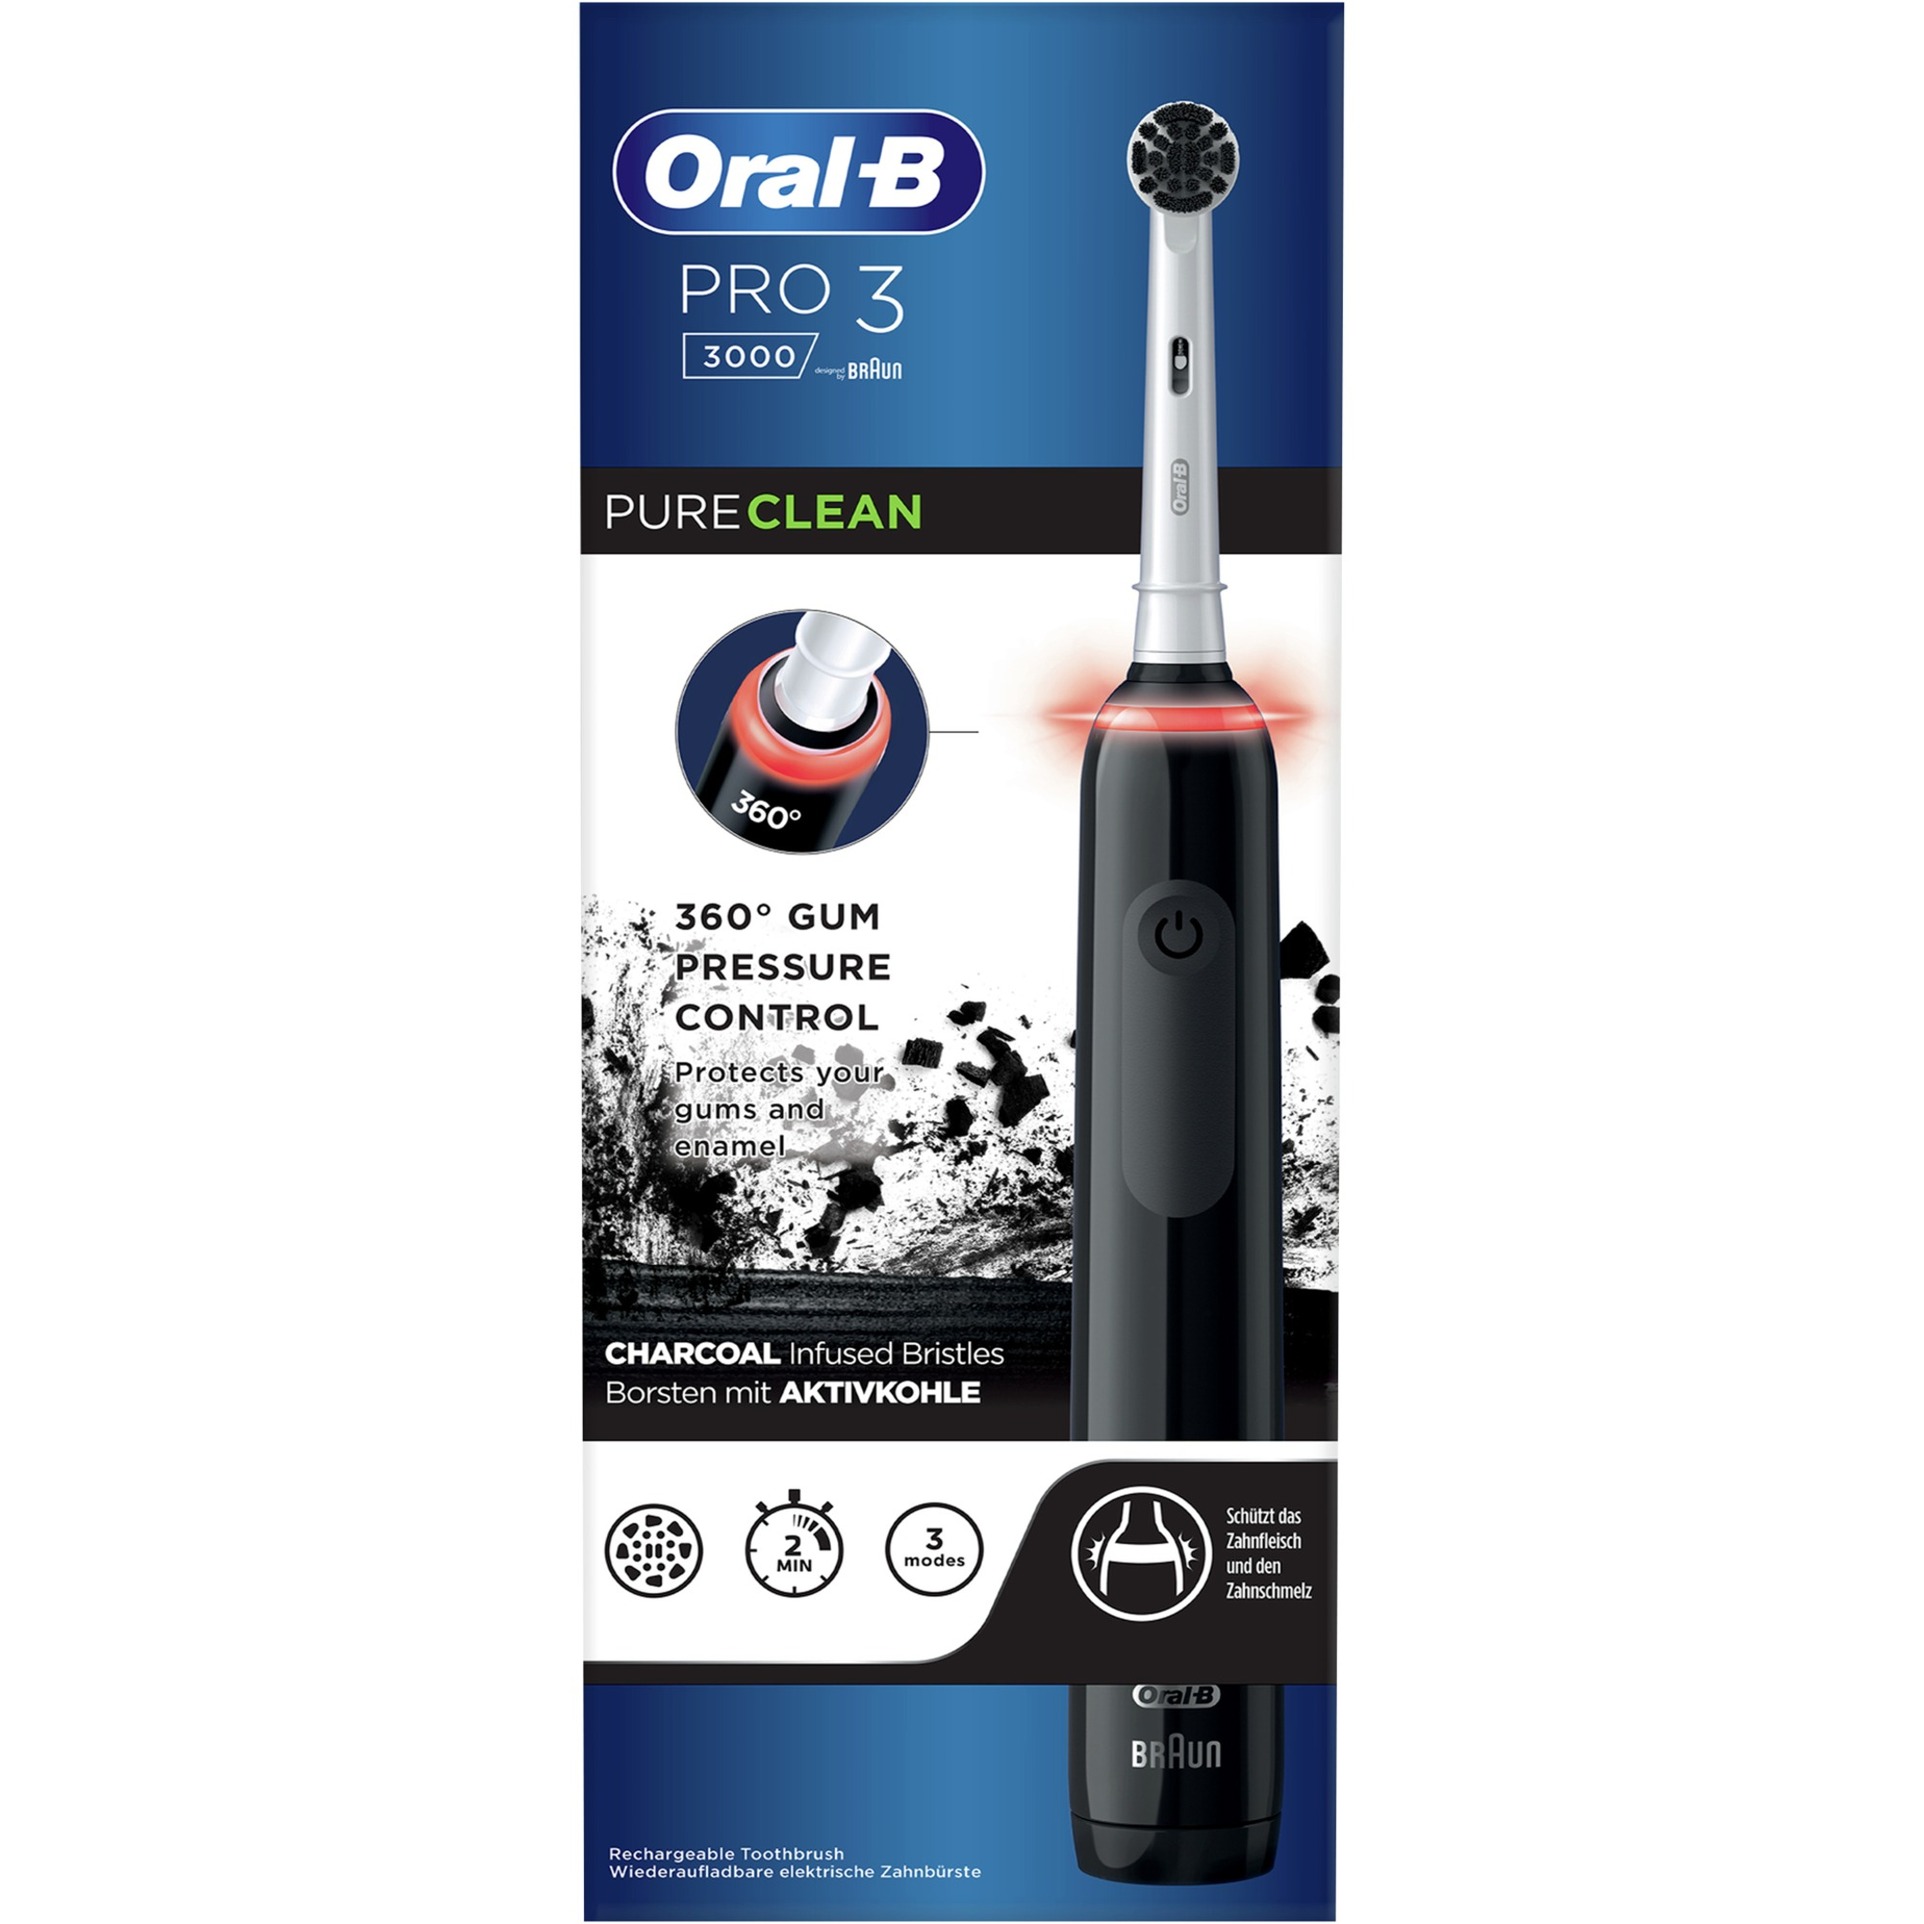 Image of Alternate - Oral-B Pro 3 3000 Pure Clean, Elektrische Zahnbürste online einkaufen bei Alternate